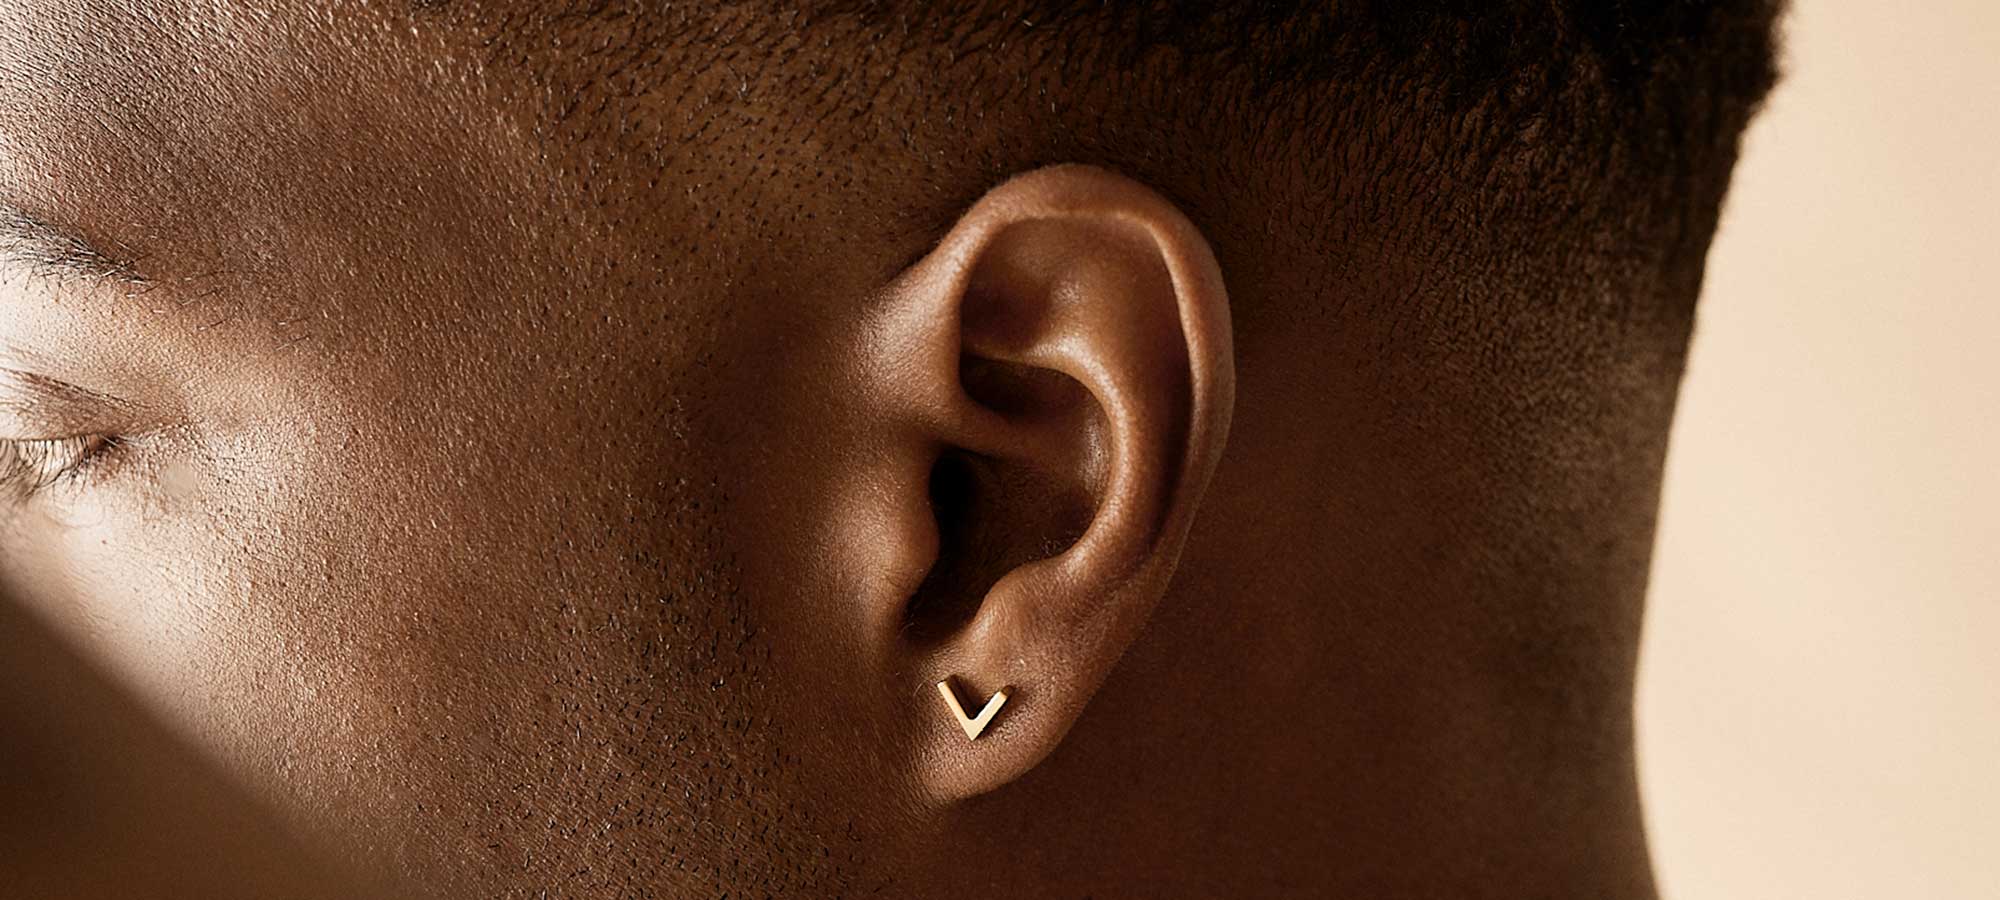 Skin friendly earrings for men